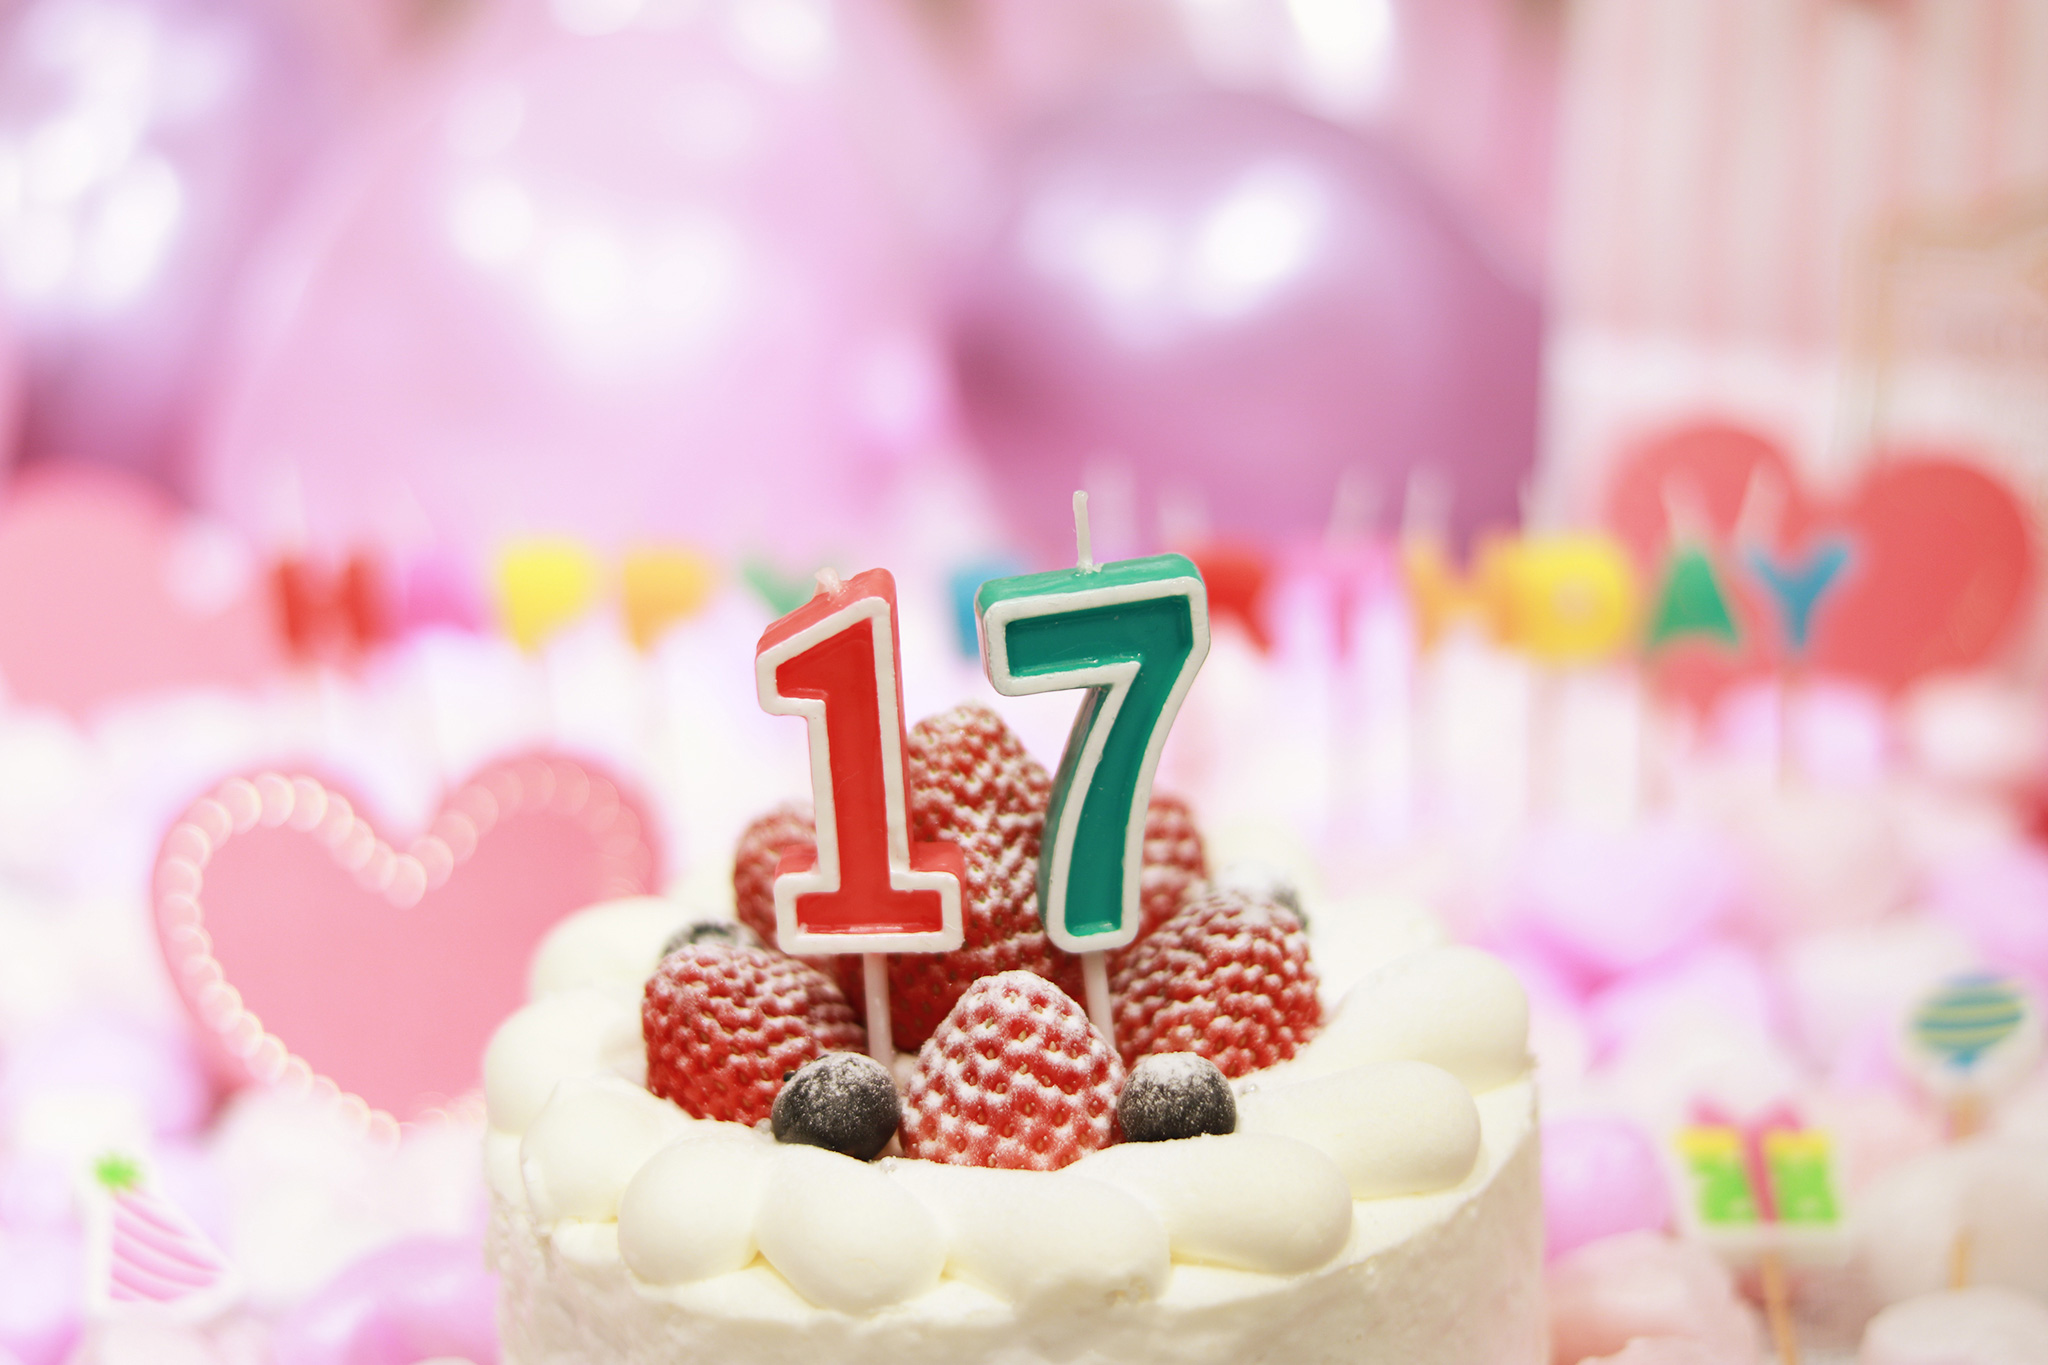 オシャレな誕生日画像 可愛いケーキとキャンドルでお祝い 17歳編 のフリー画像 おしゃれなフリー写真素材 Girly Drop